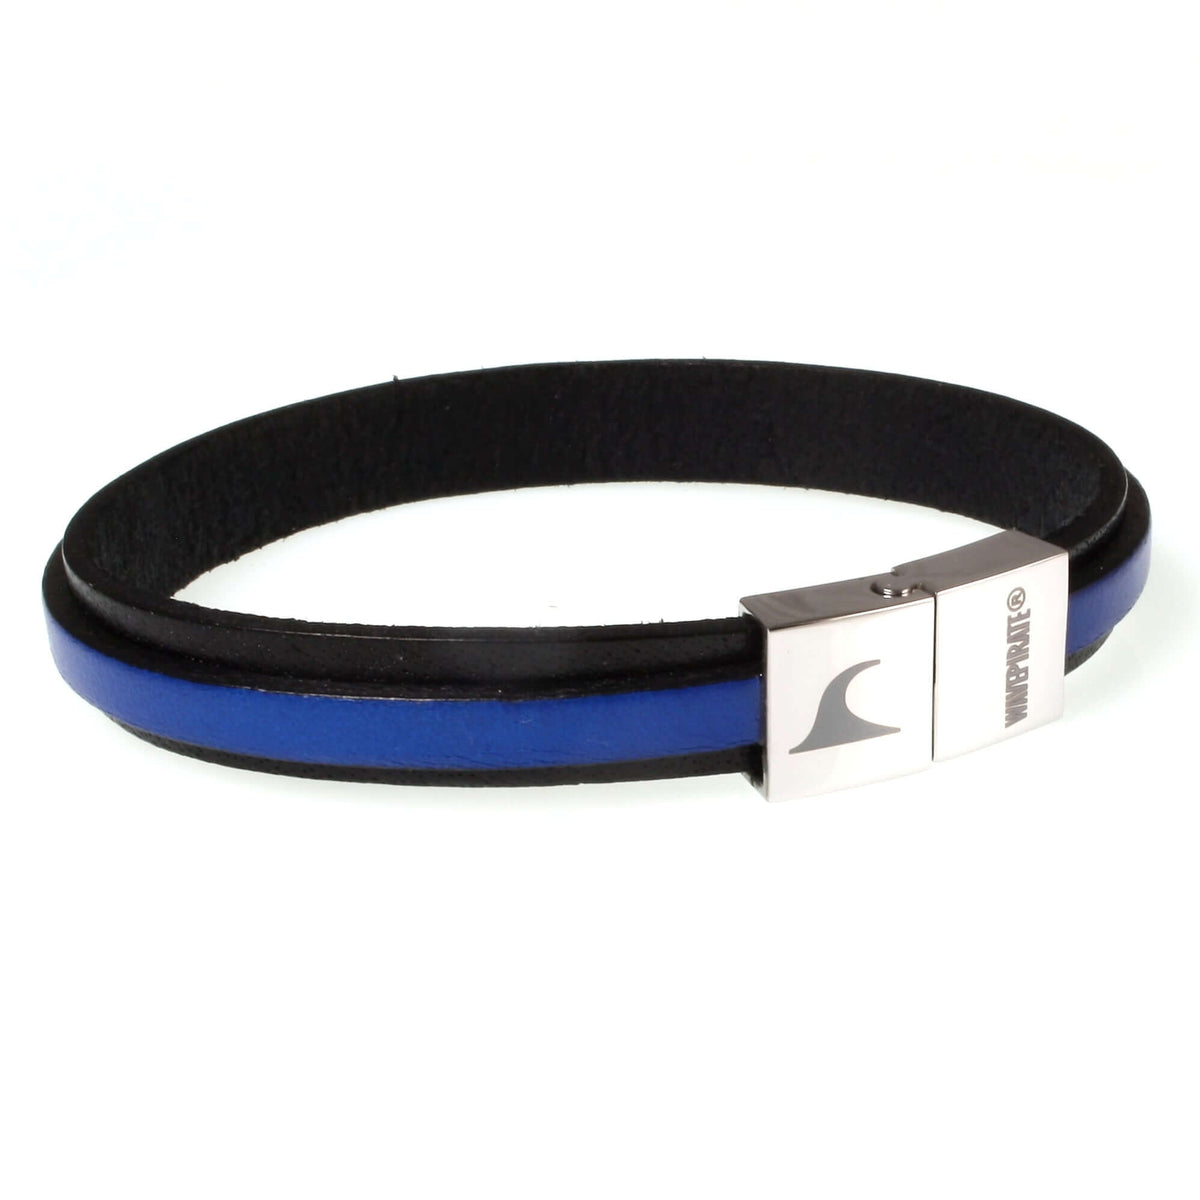 Herren-Leder-Armband-Line-schwarz-blau-flach-Edelstahlverschluss-vorn-wavepirate-shop